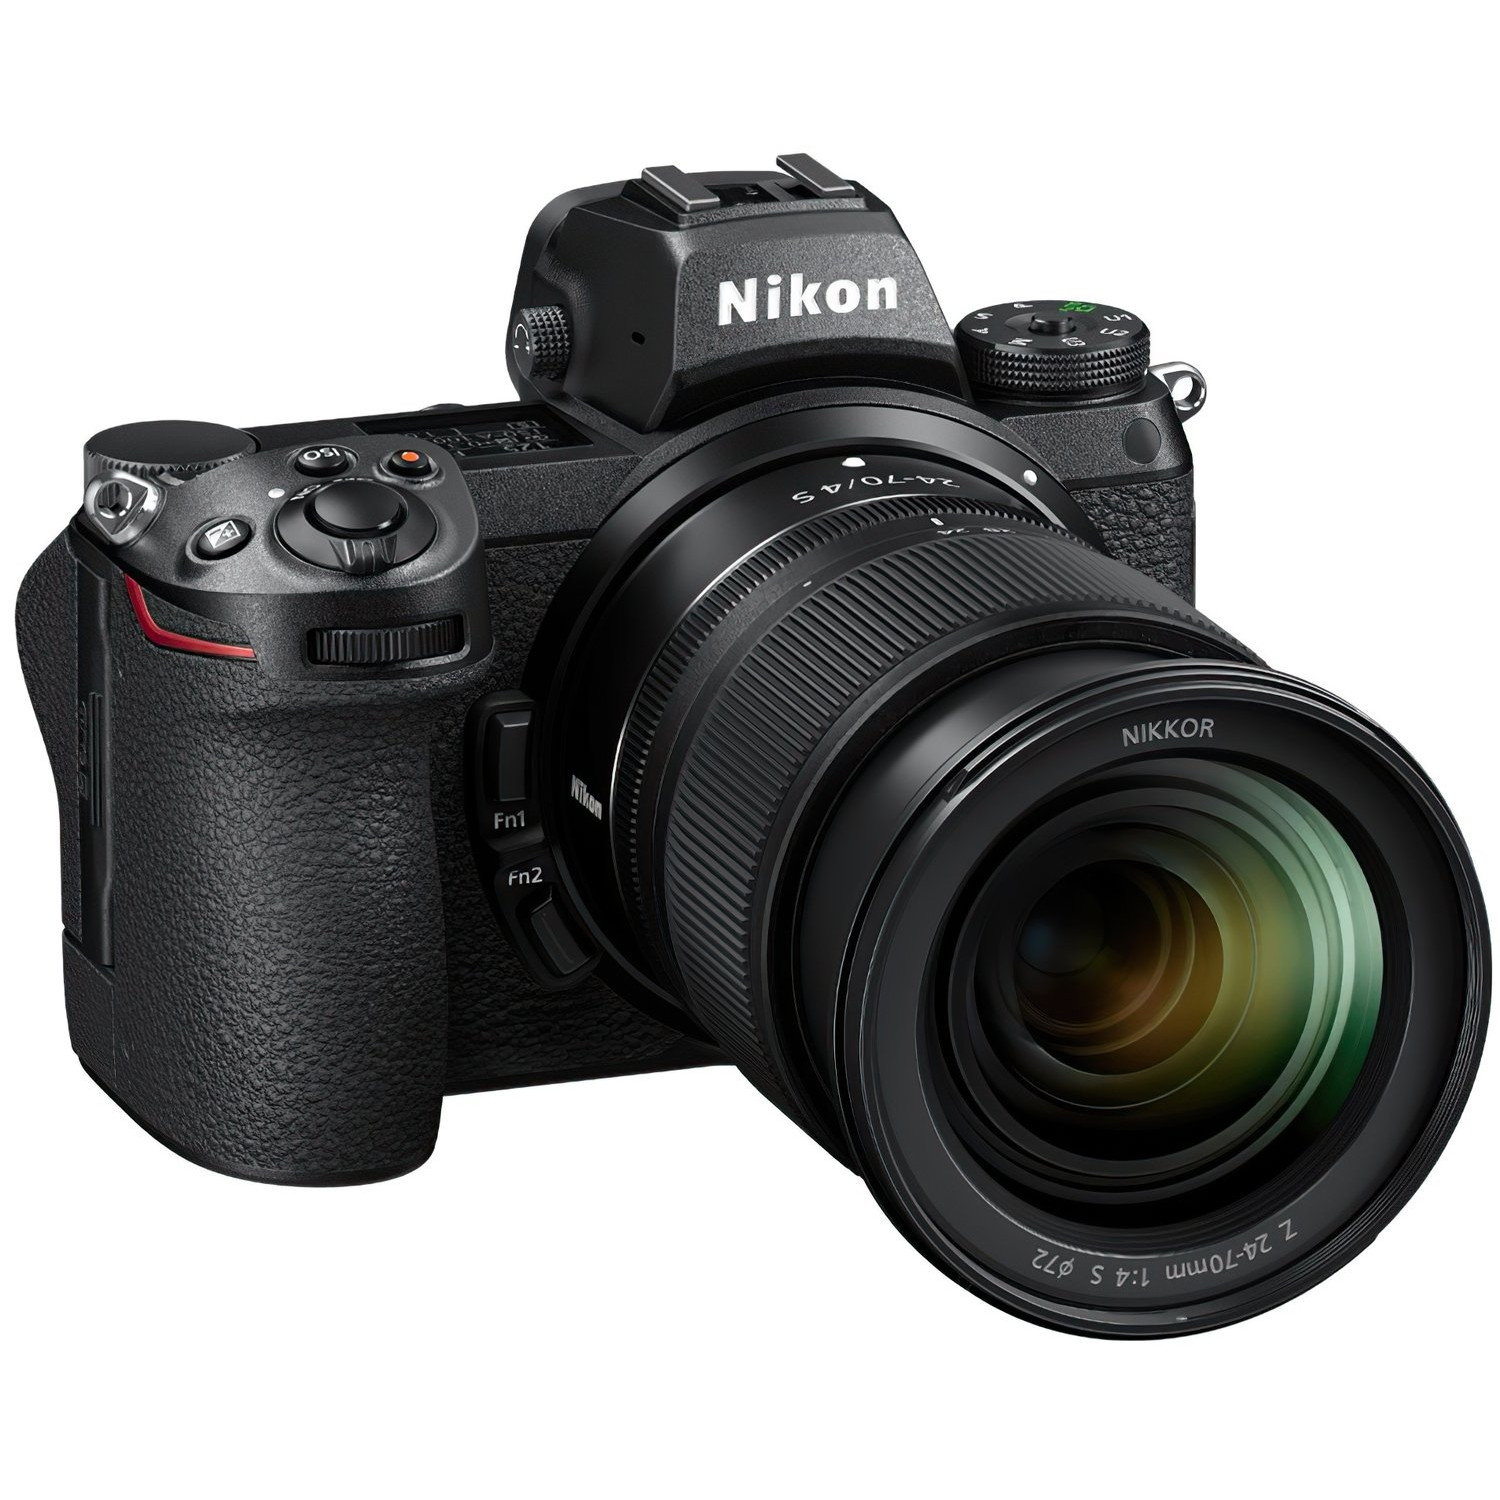 Nikon Z6 II kit (24-70mm) (VOA060K001) - зображення 1